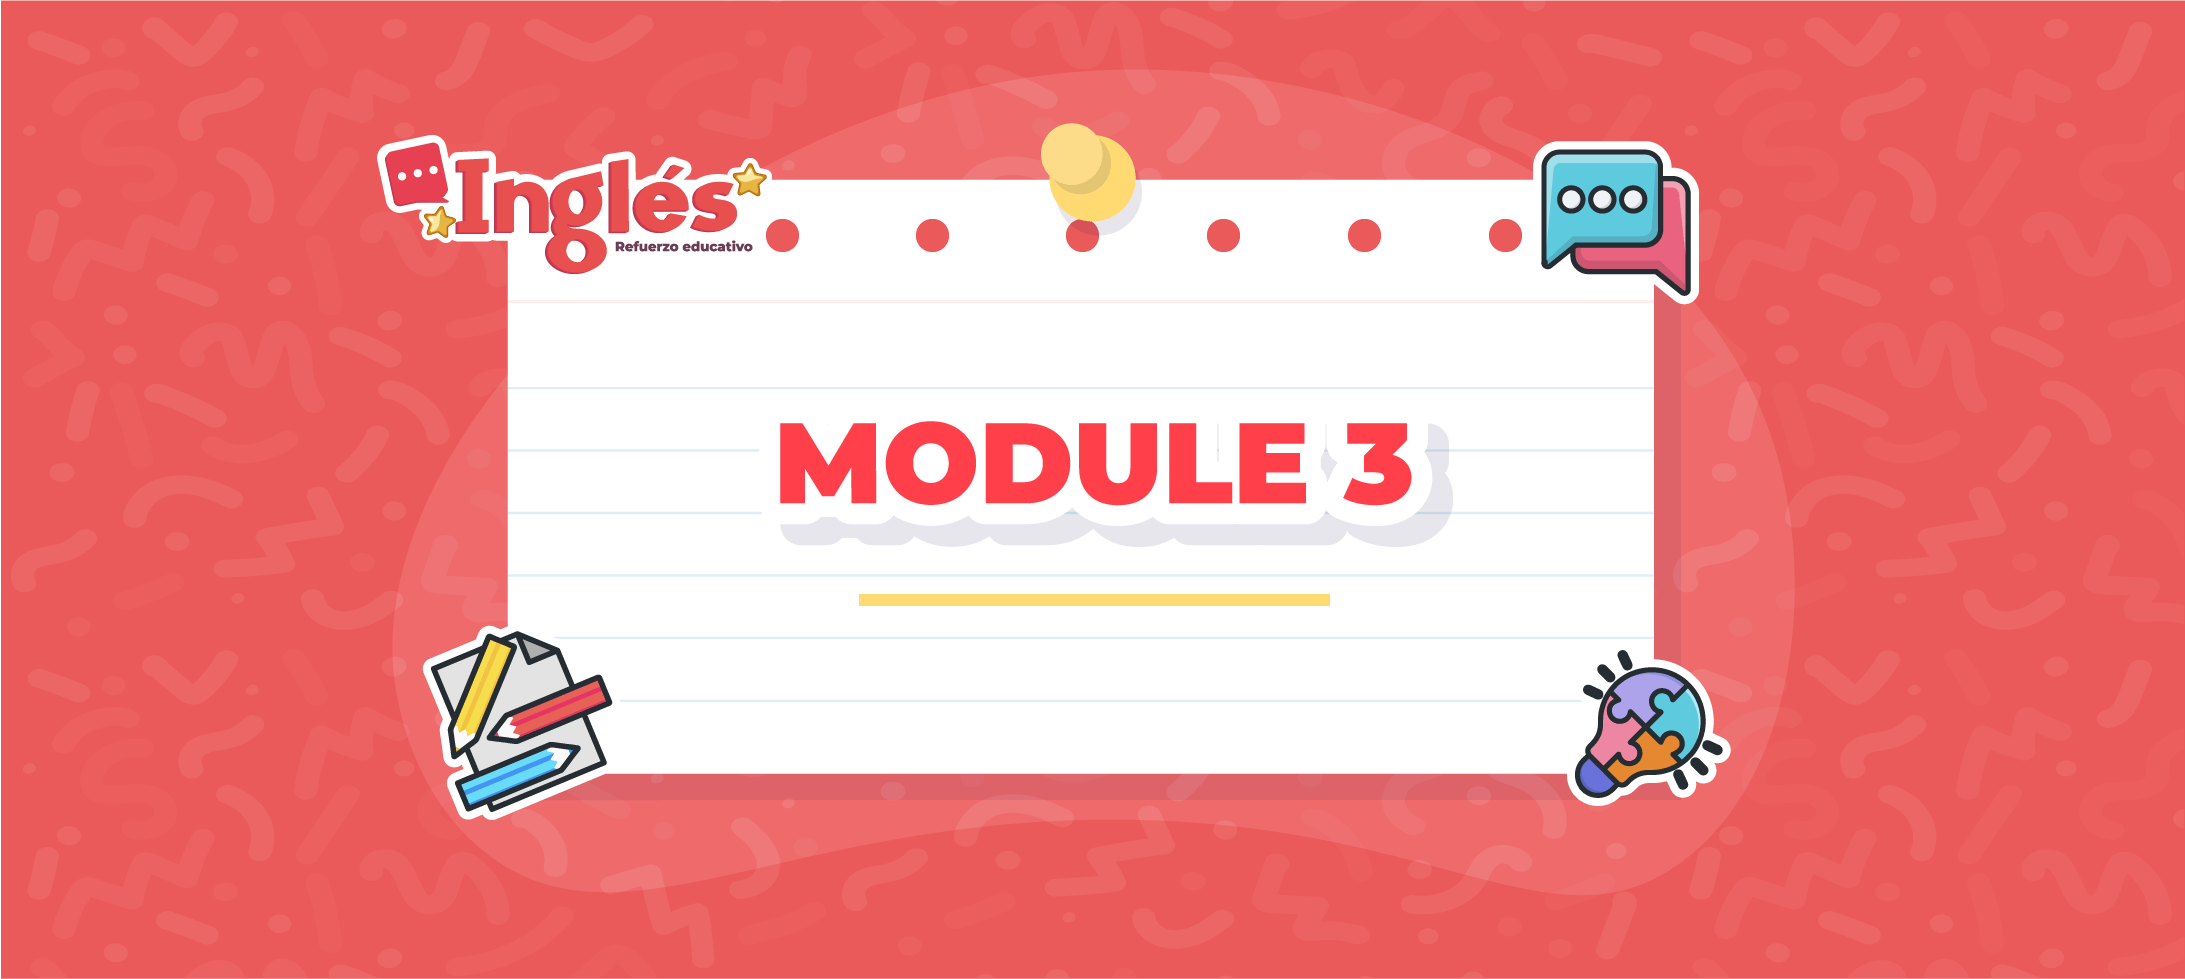 English: Module 3